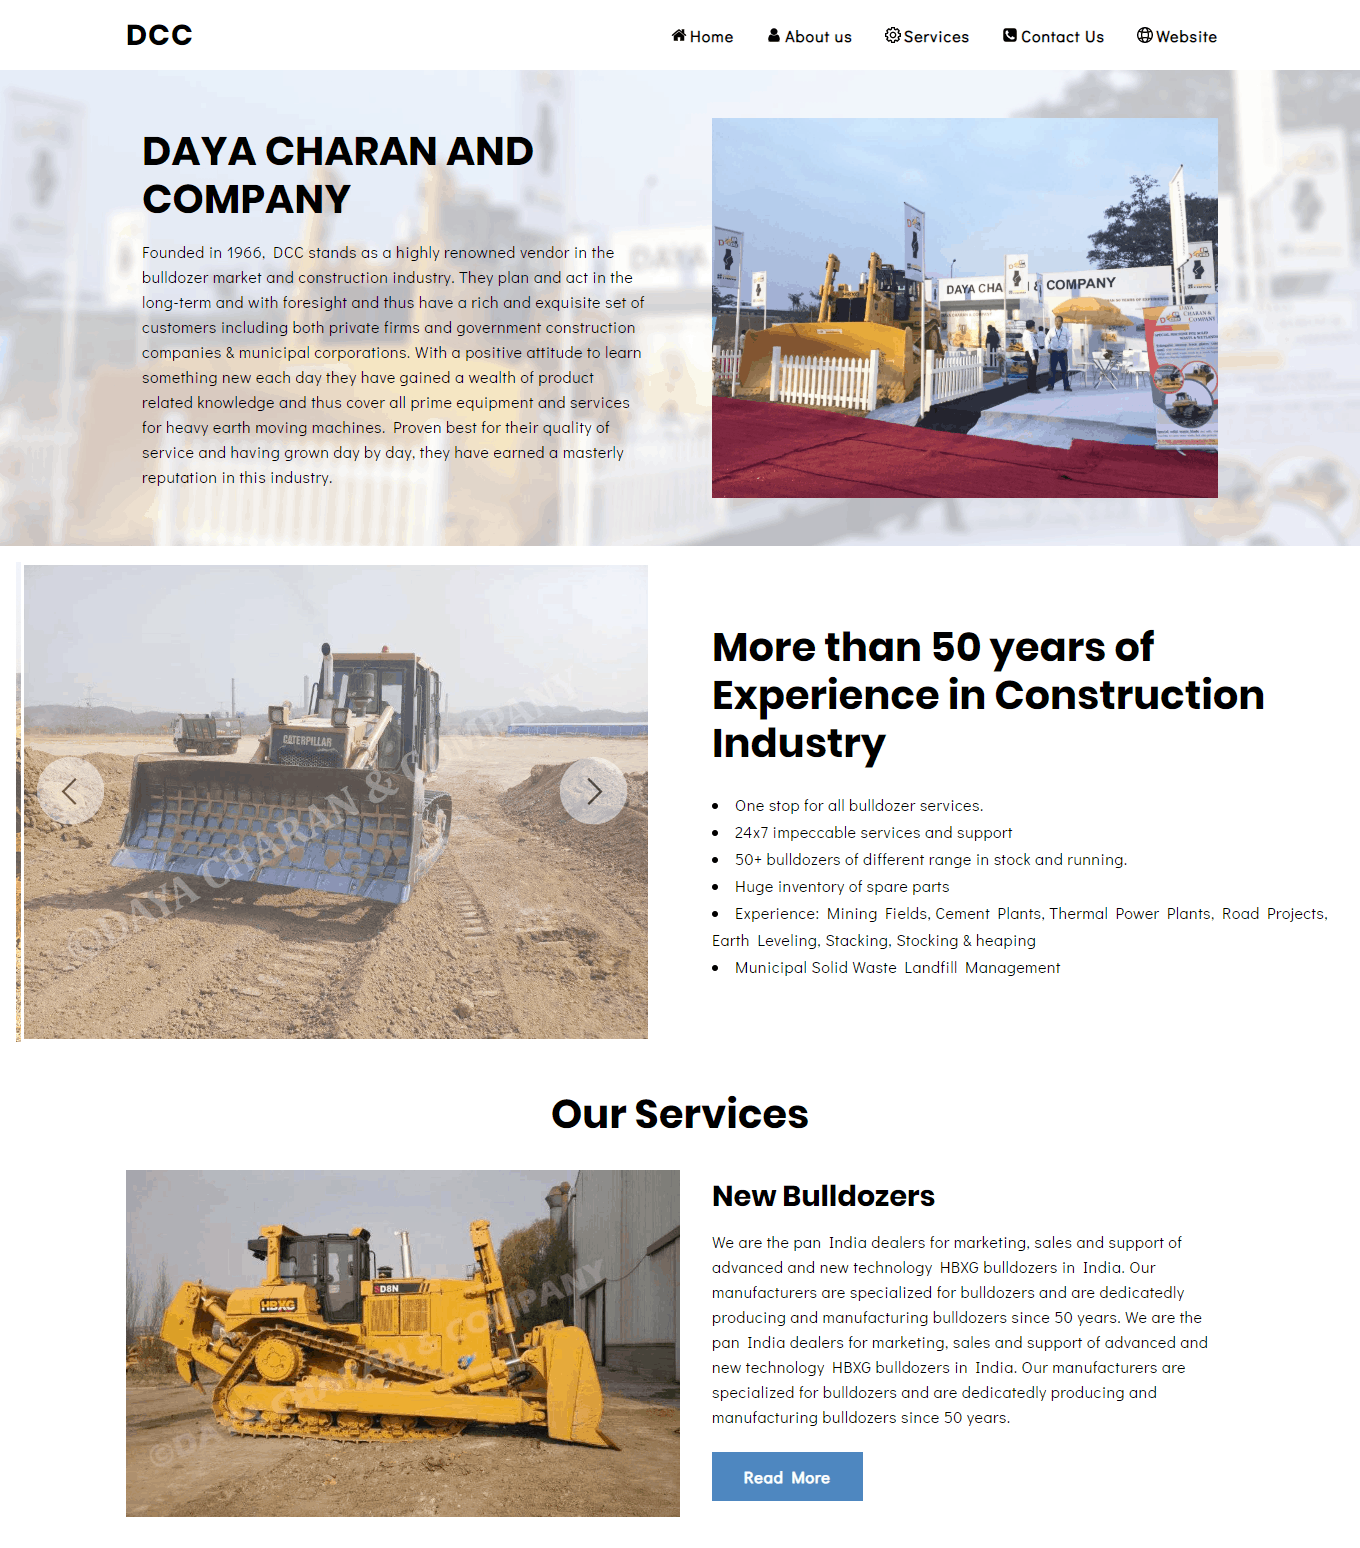 Daya Charan & Company